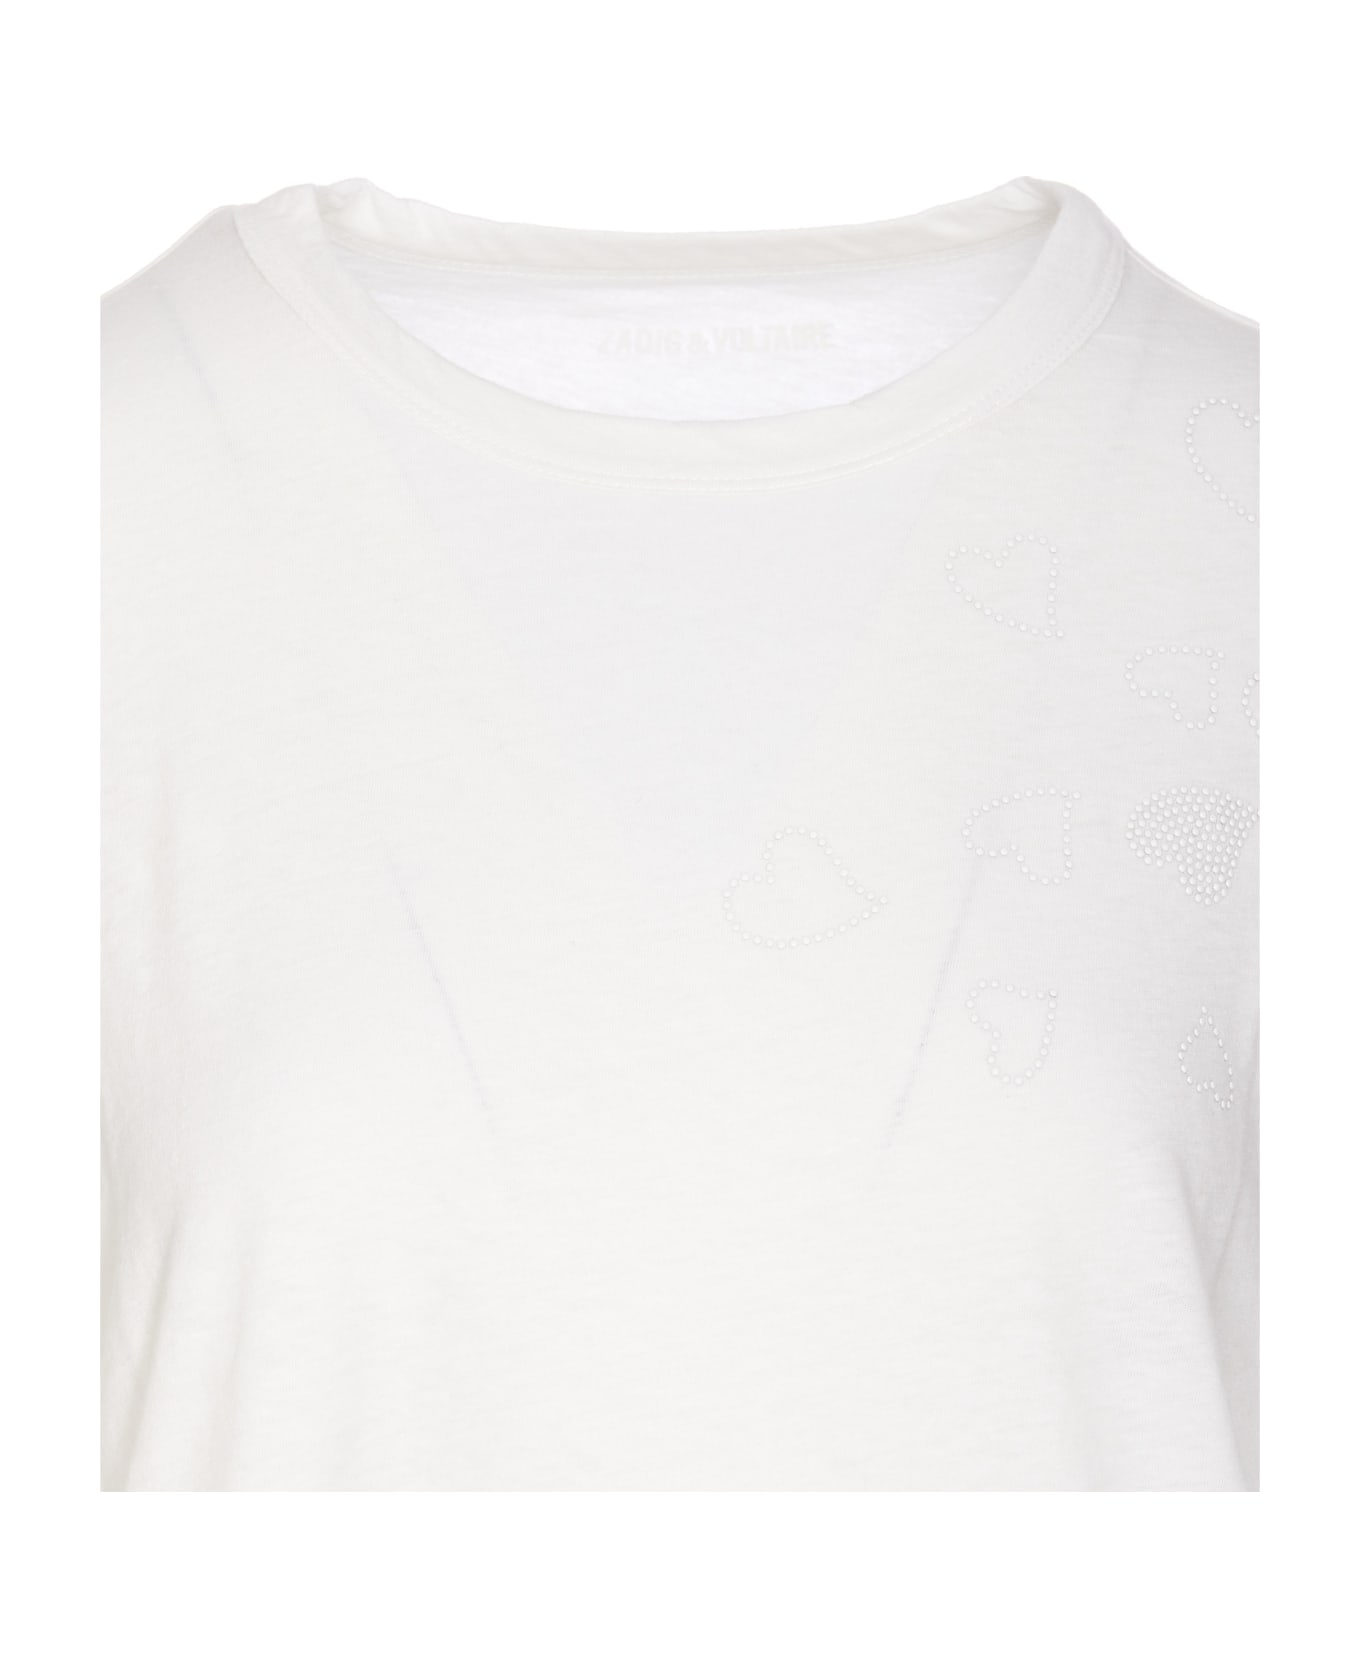 Zadig & Voltaire Anya Rain Stud T-shirt - White